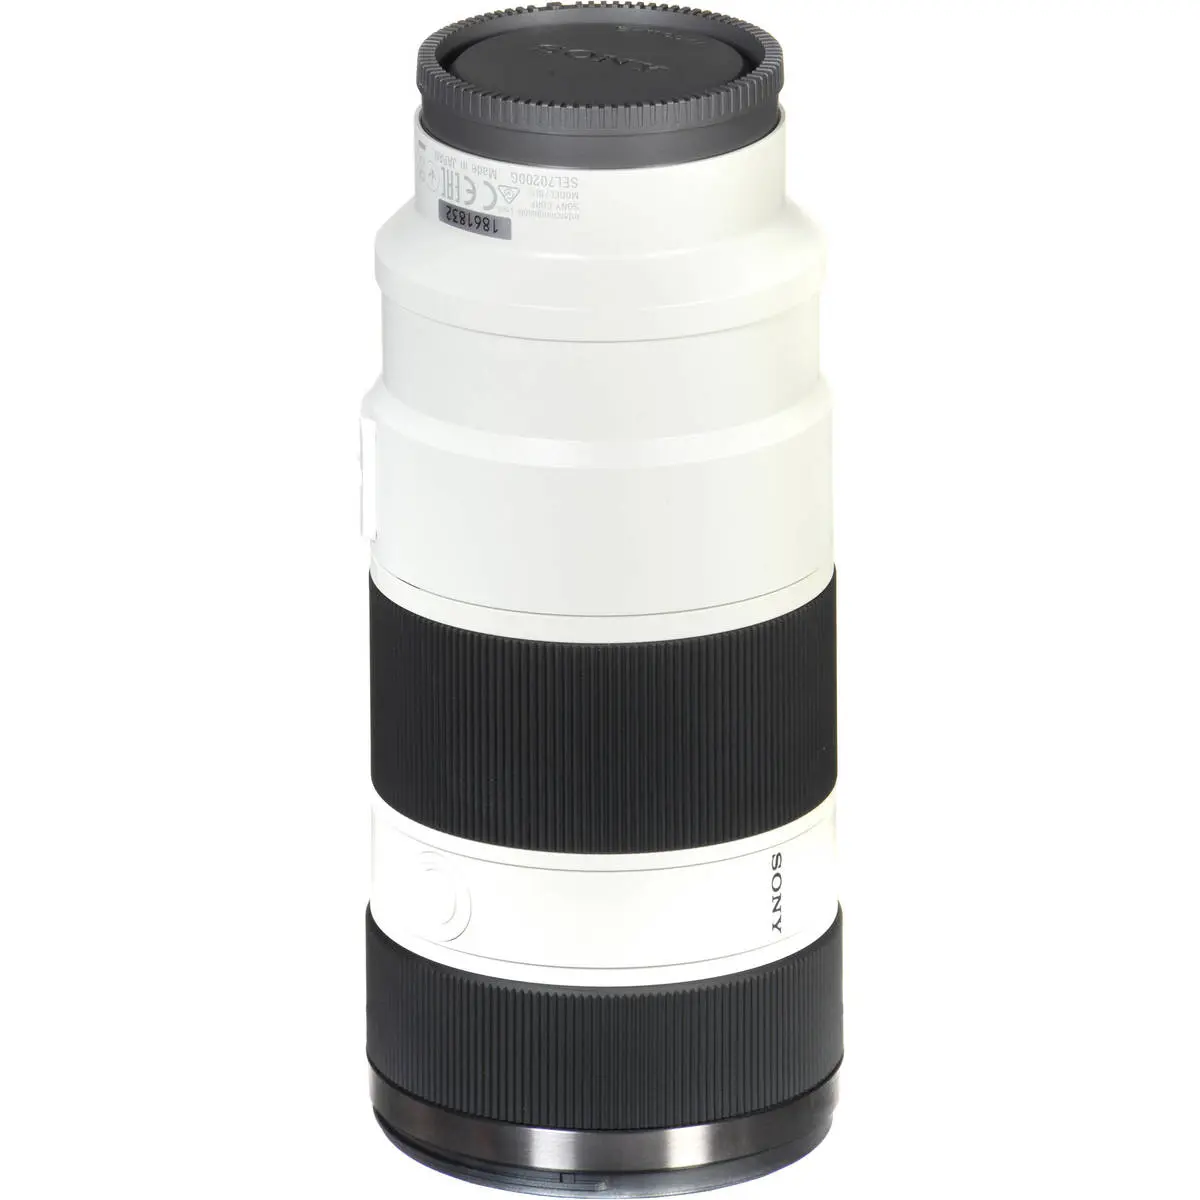 5. Sony FE 70-200mm F4.0 F4 G OSS E-Mount Full Frame Lens